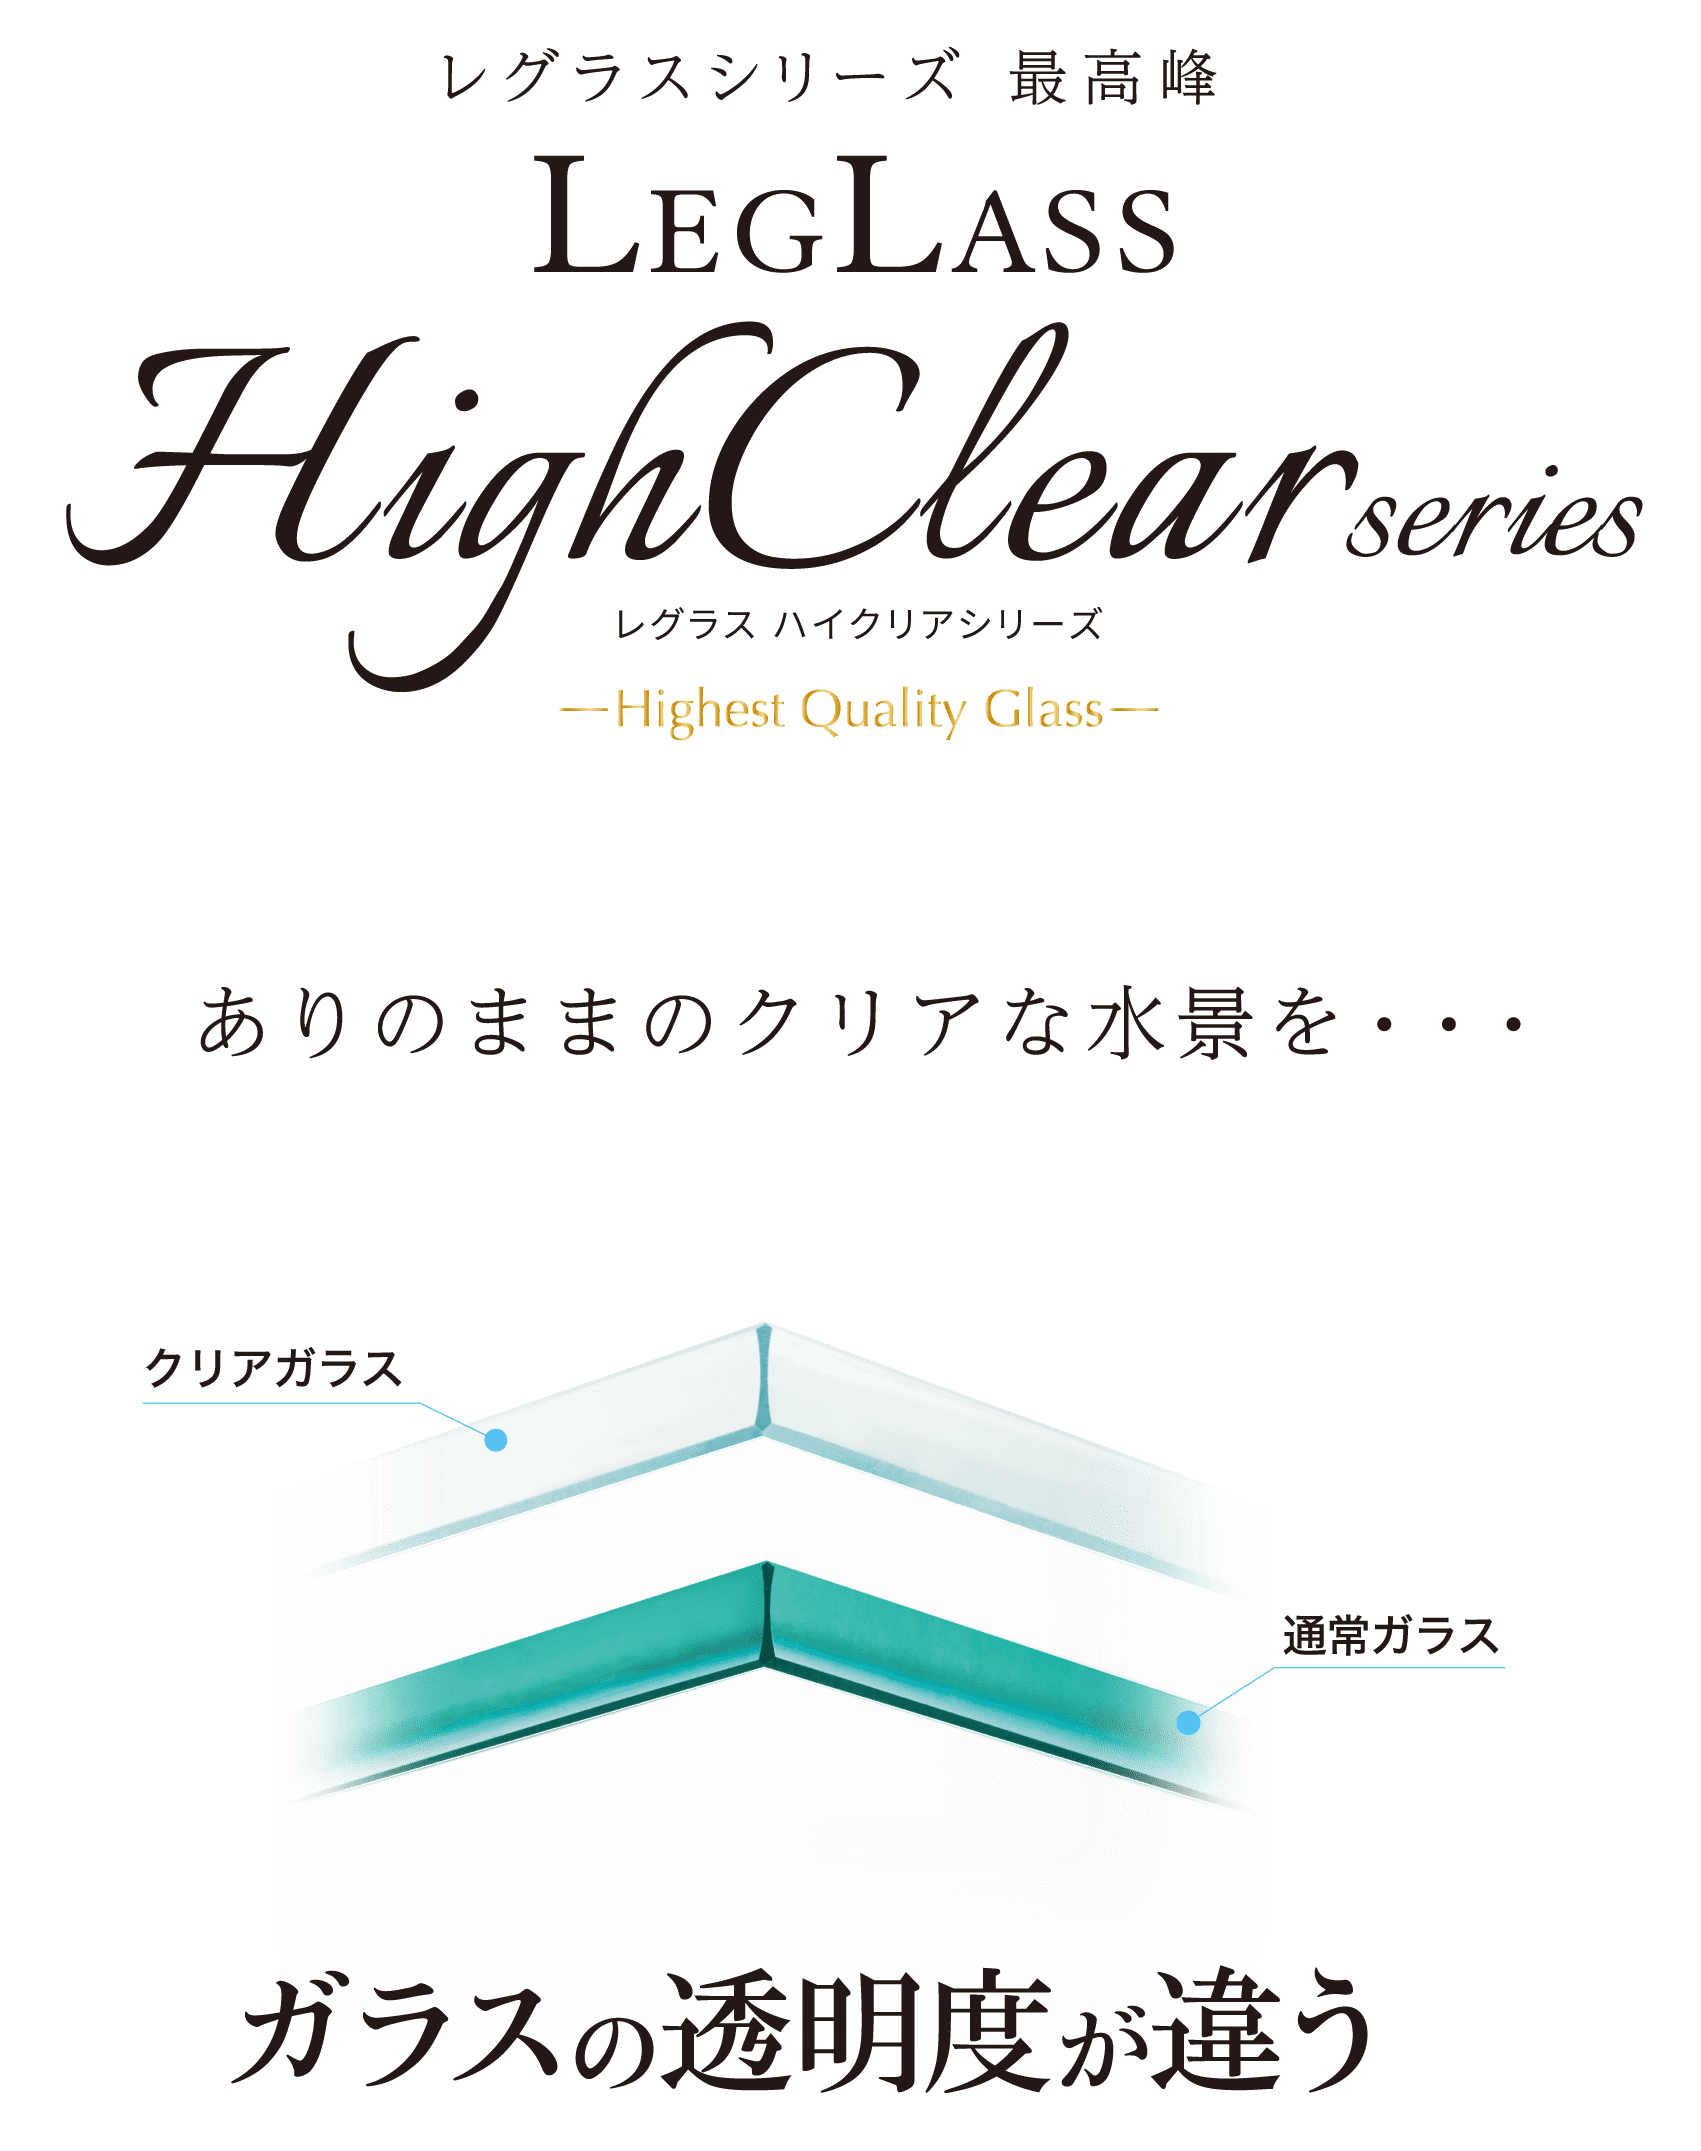 LeGrass HighClear